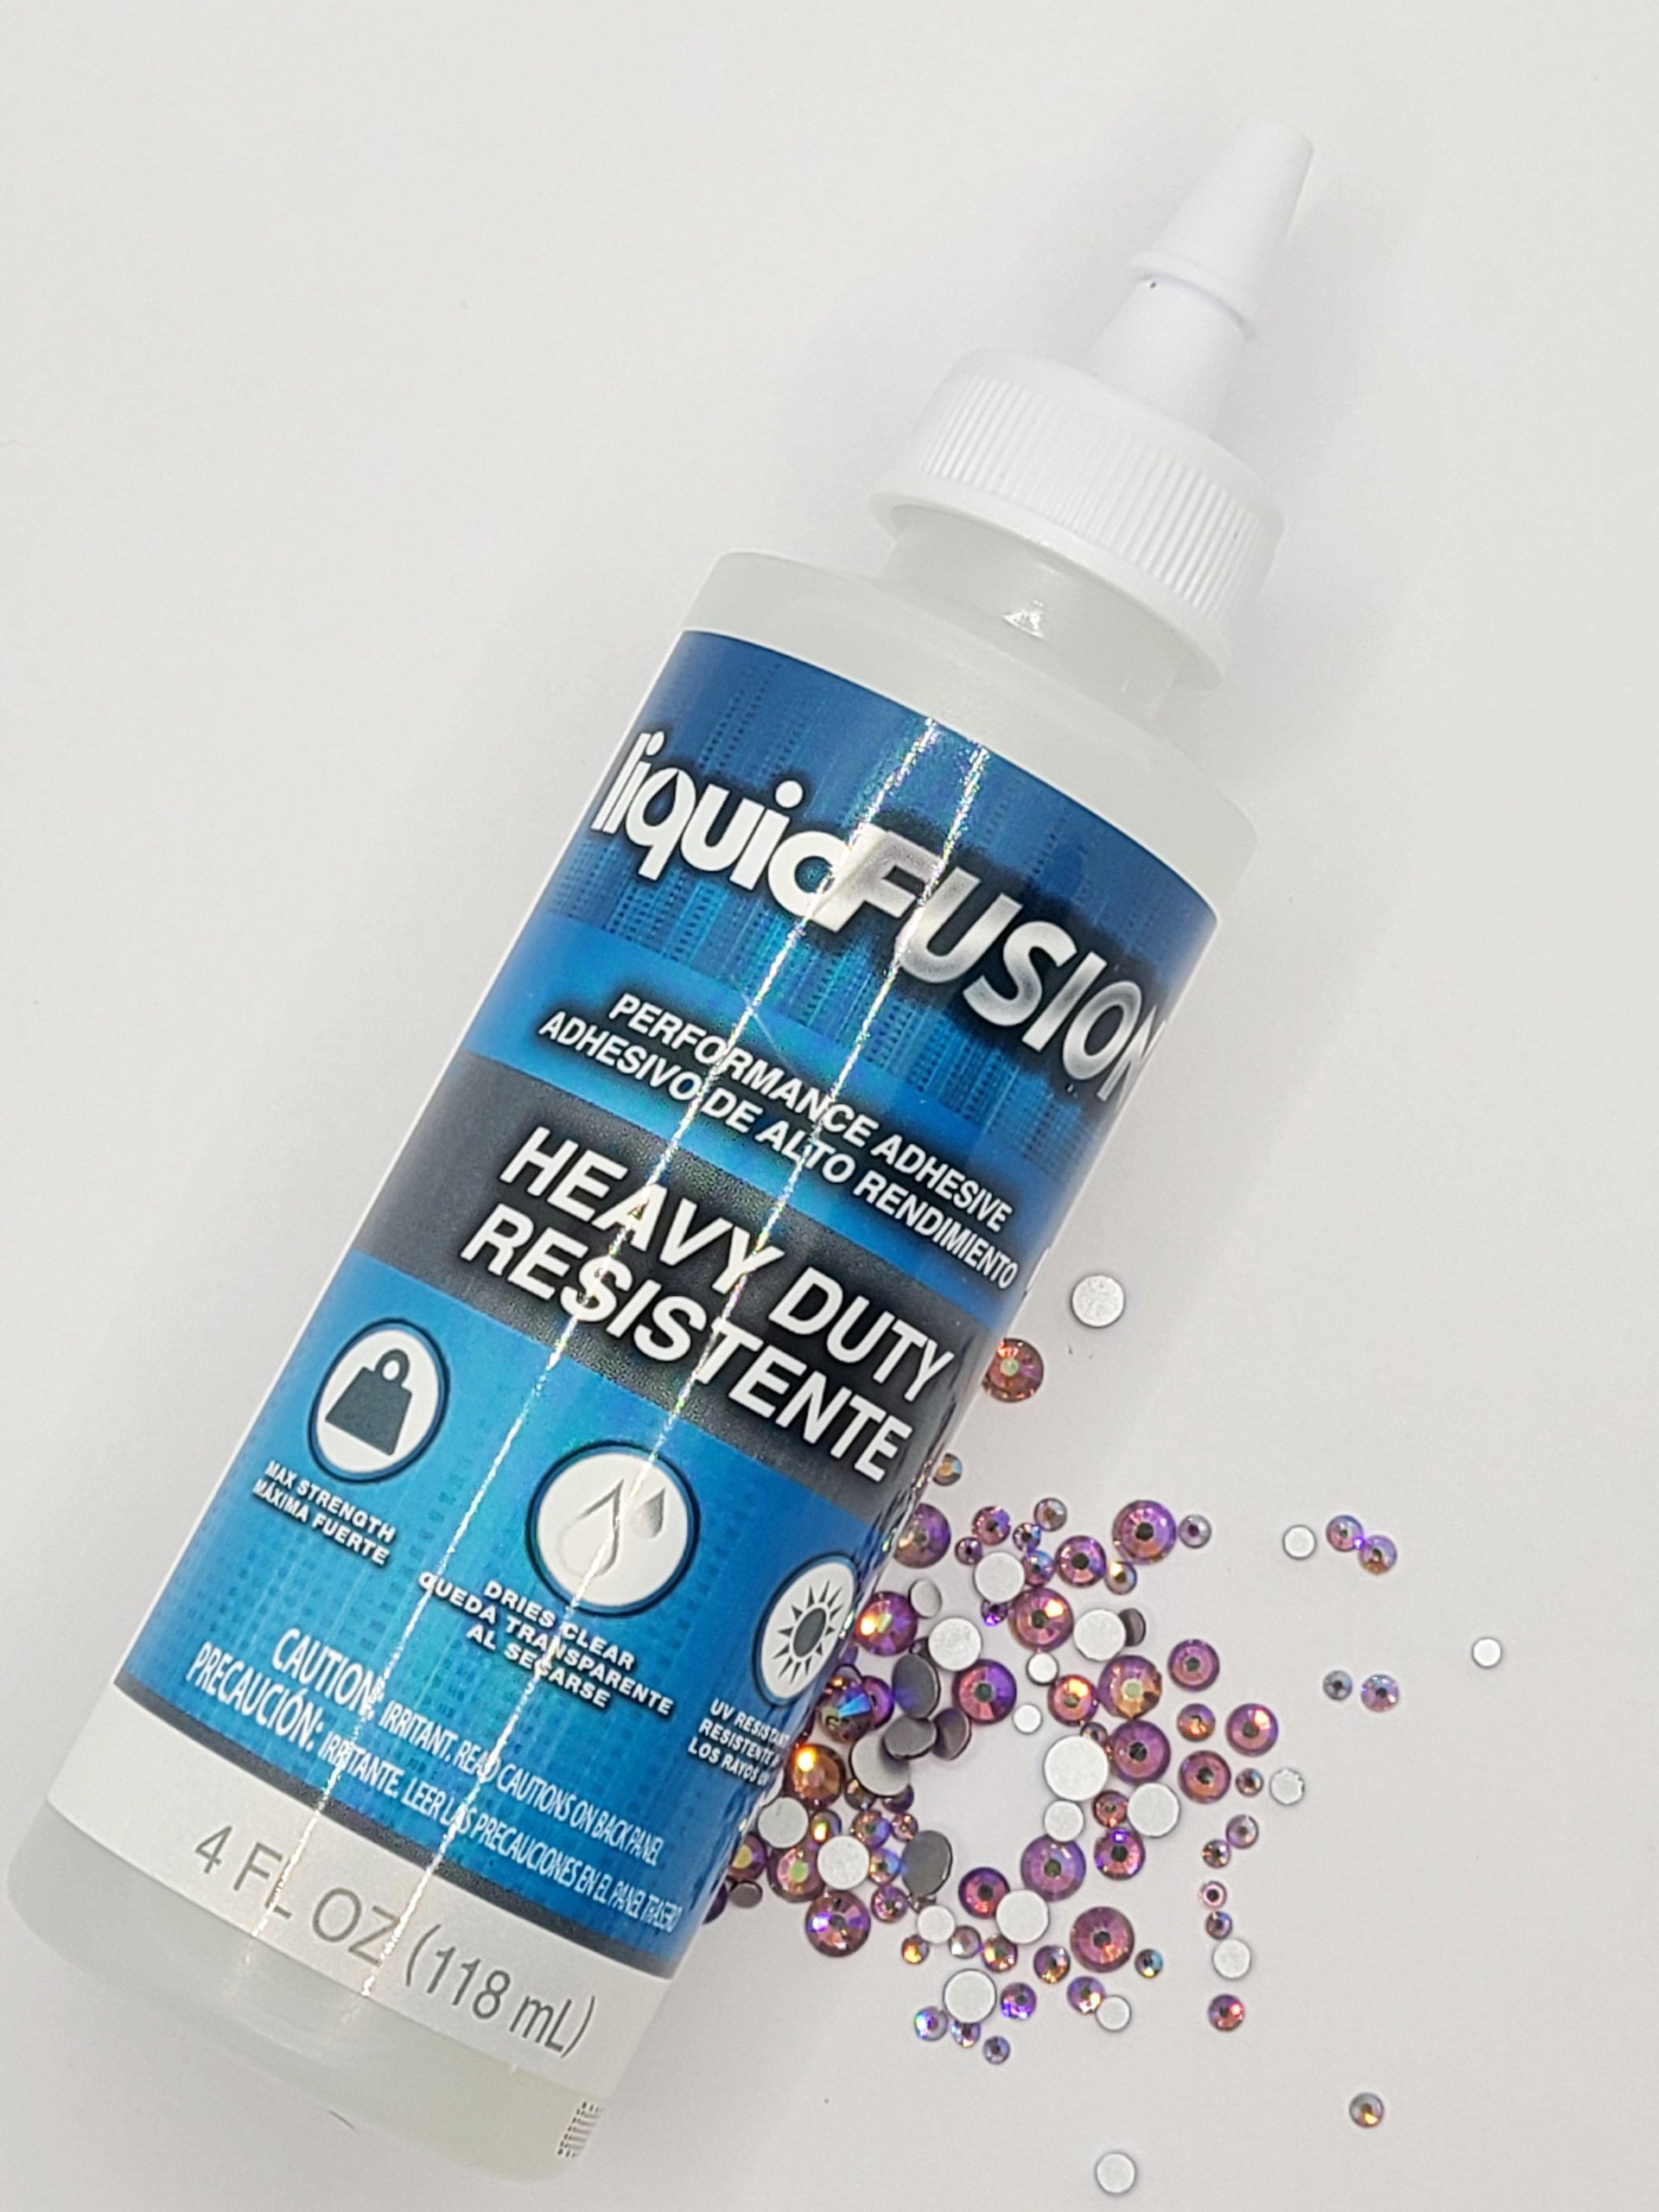 4 oz Liquid Fusion® and Glue Pen Duo – The Blinging Bluebird